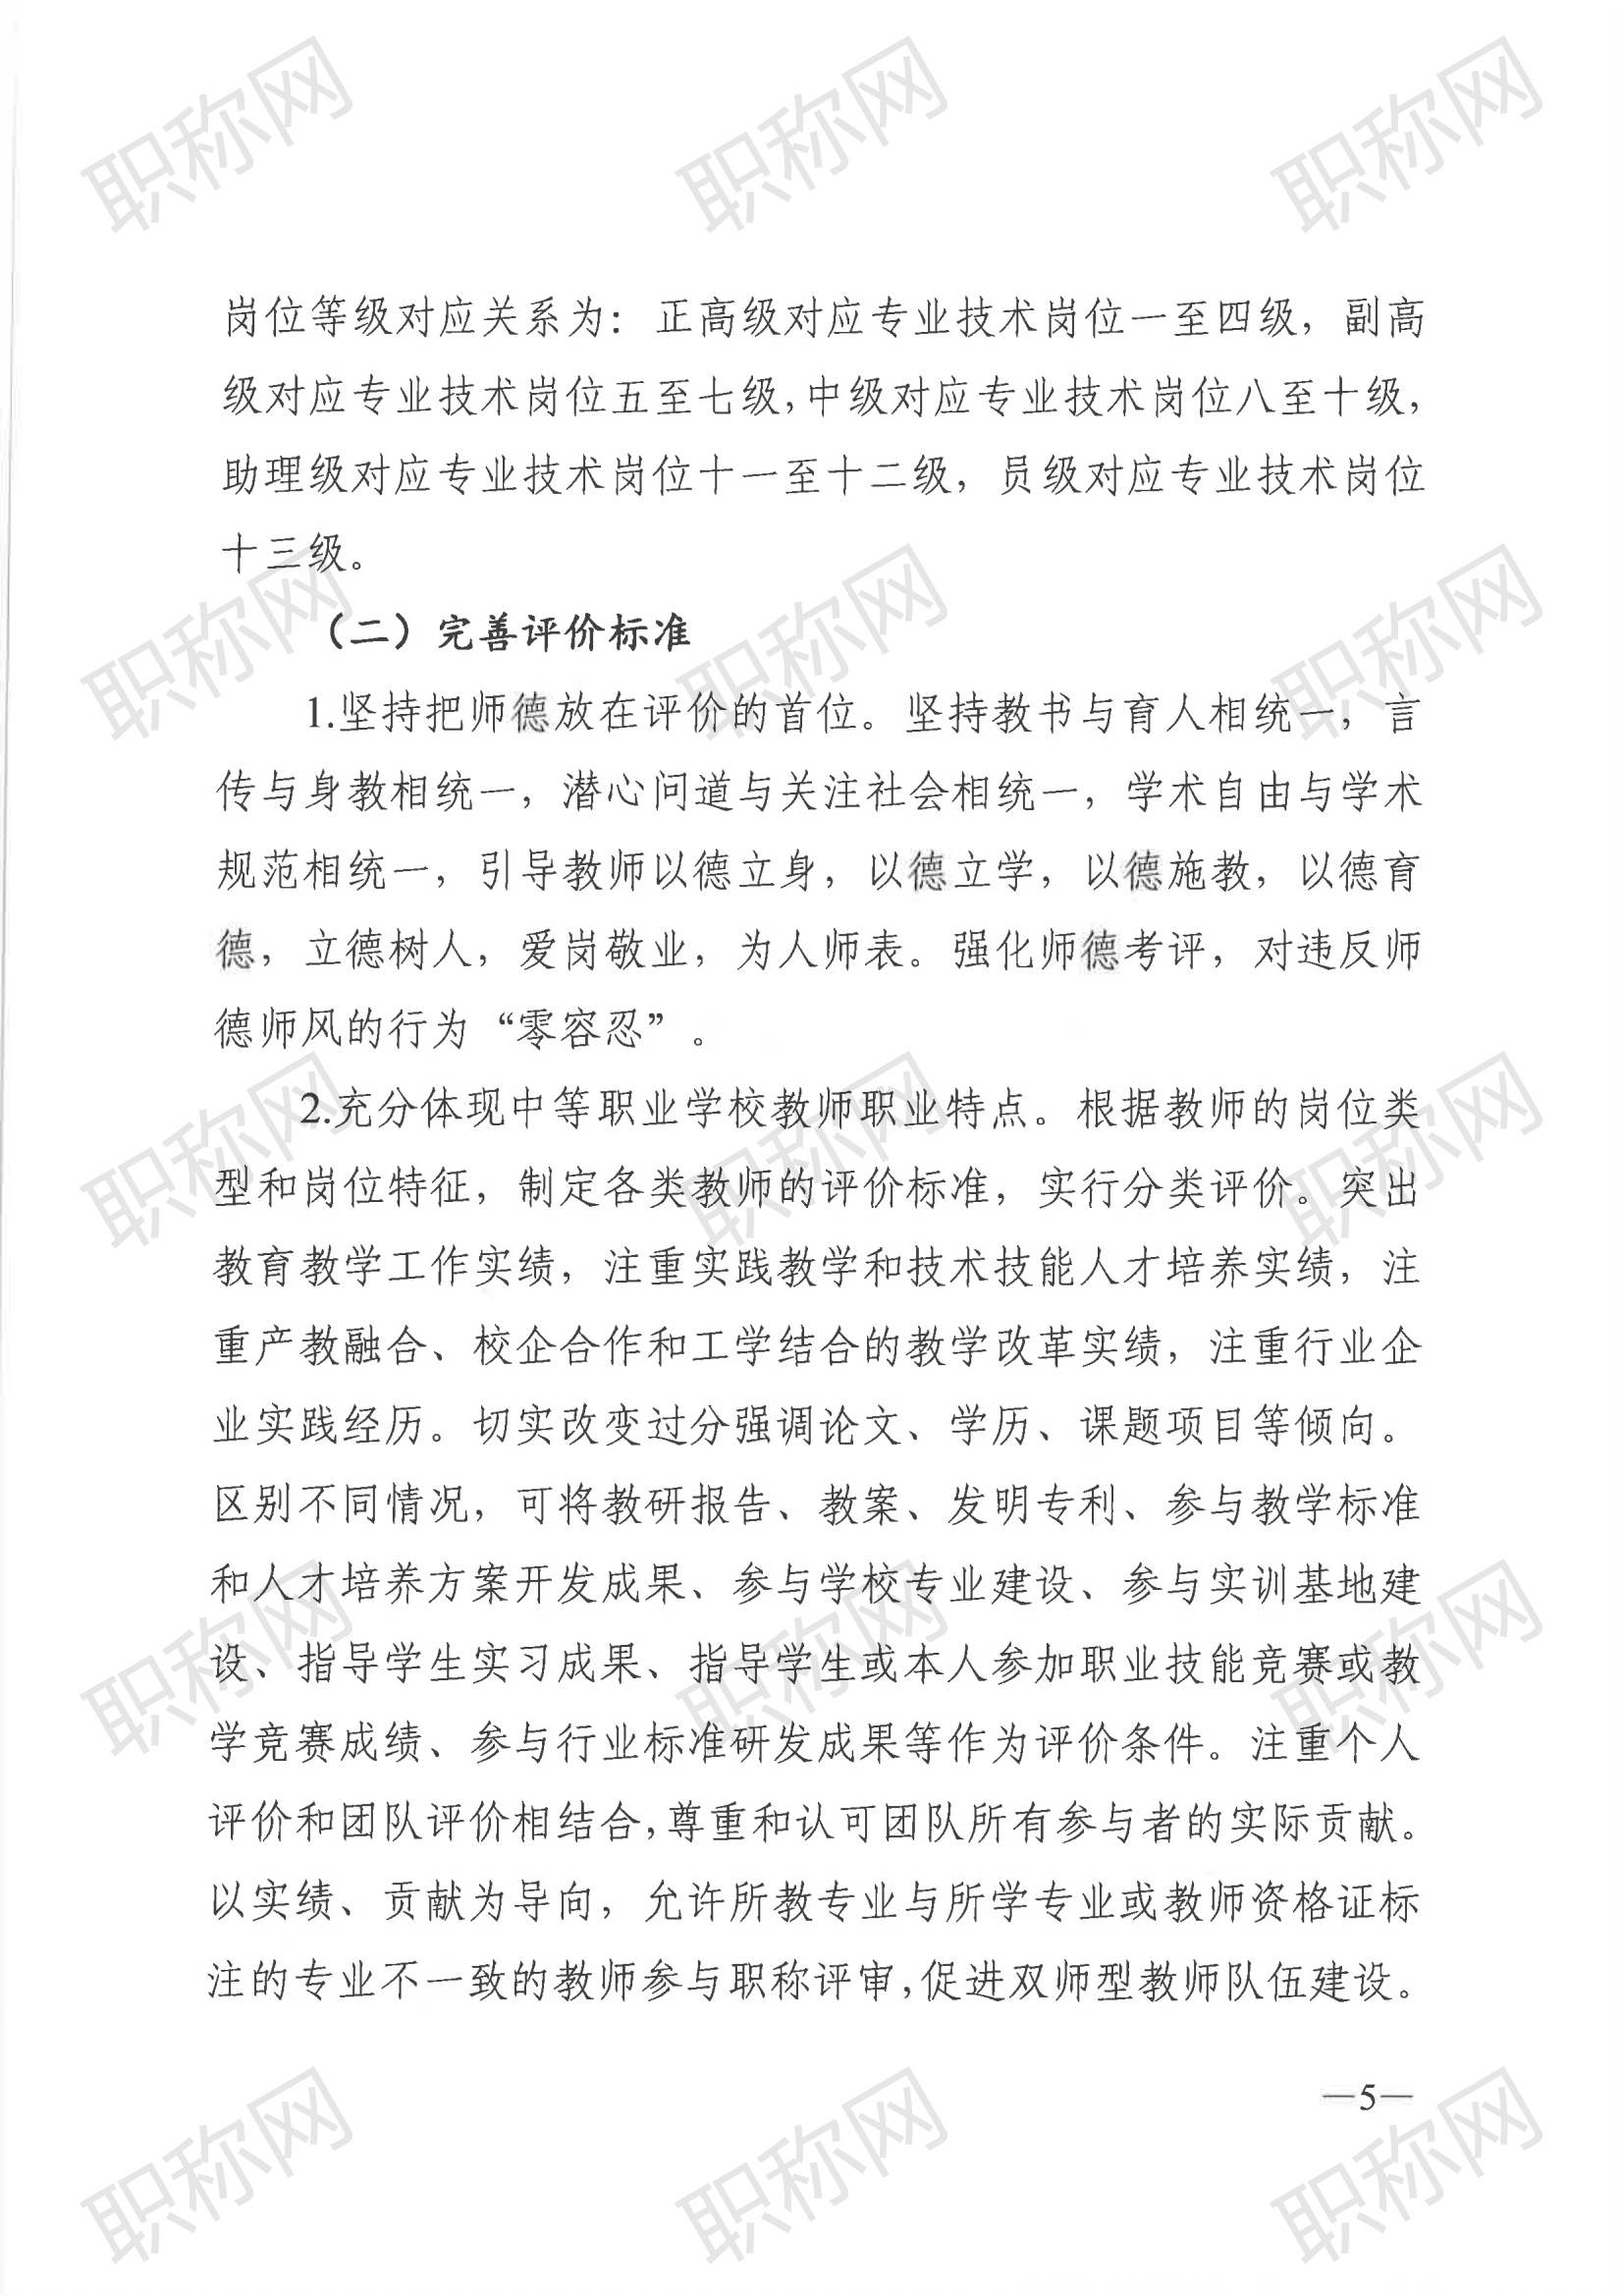 广东省深化中等职业学校教师职称制度改革实施方案》的通知_04.png